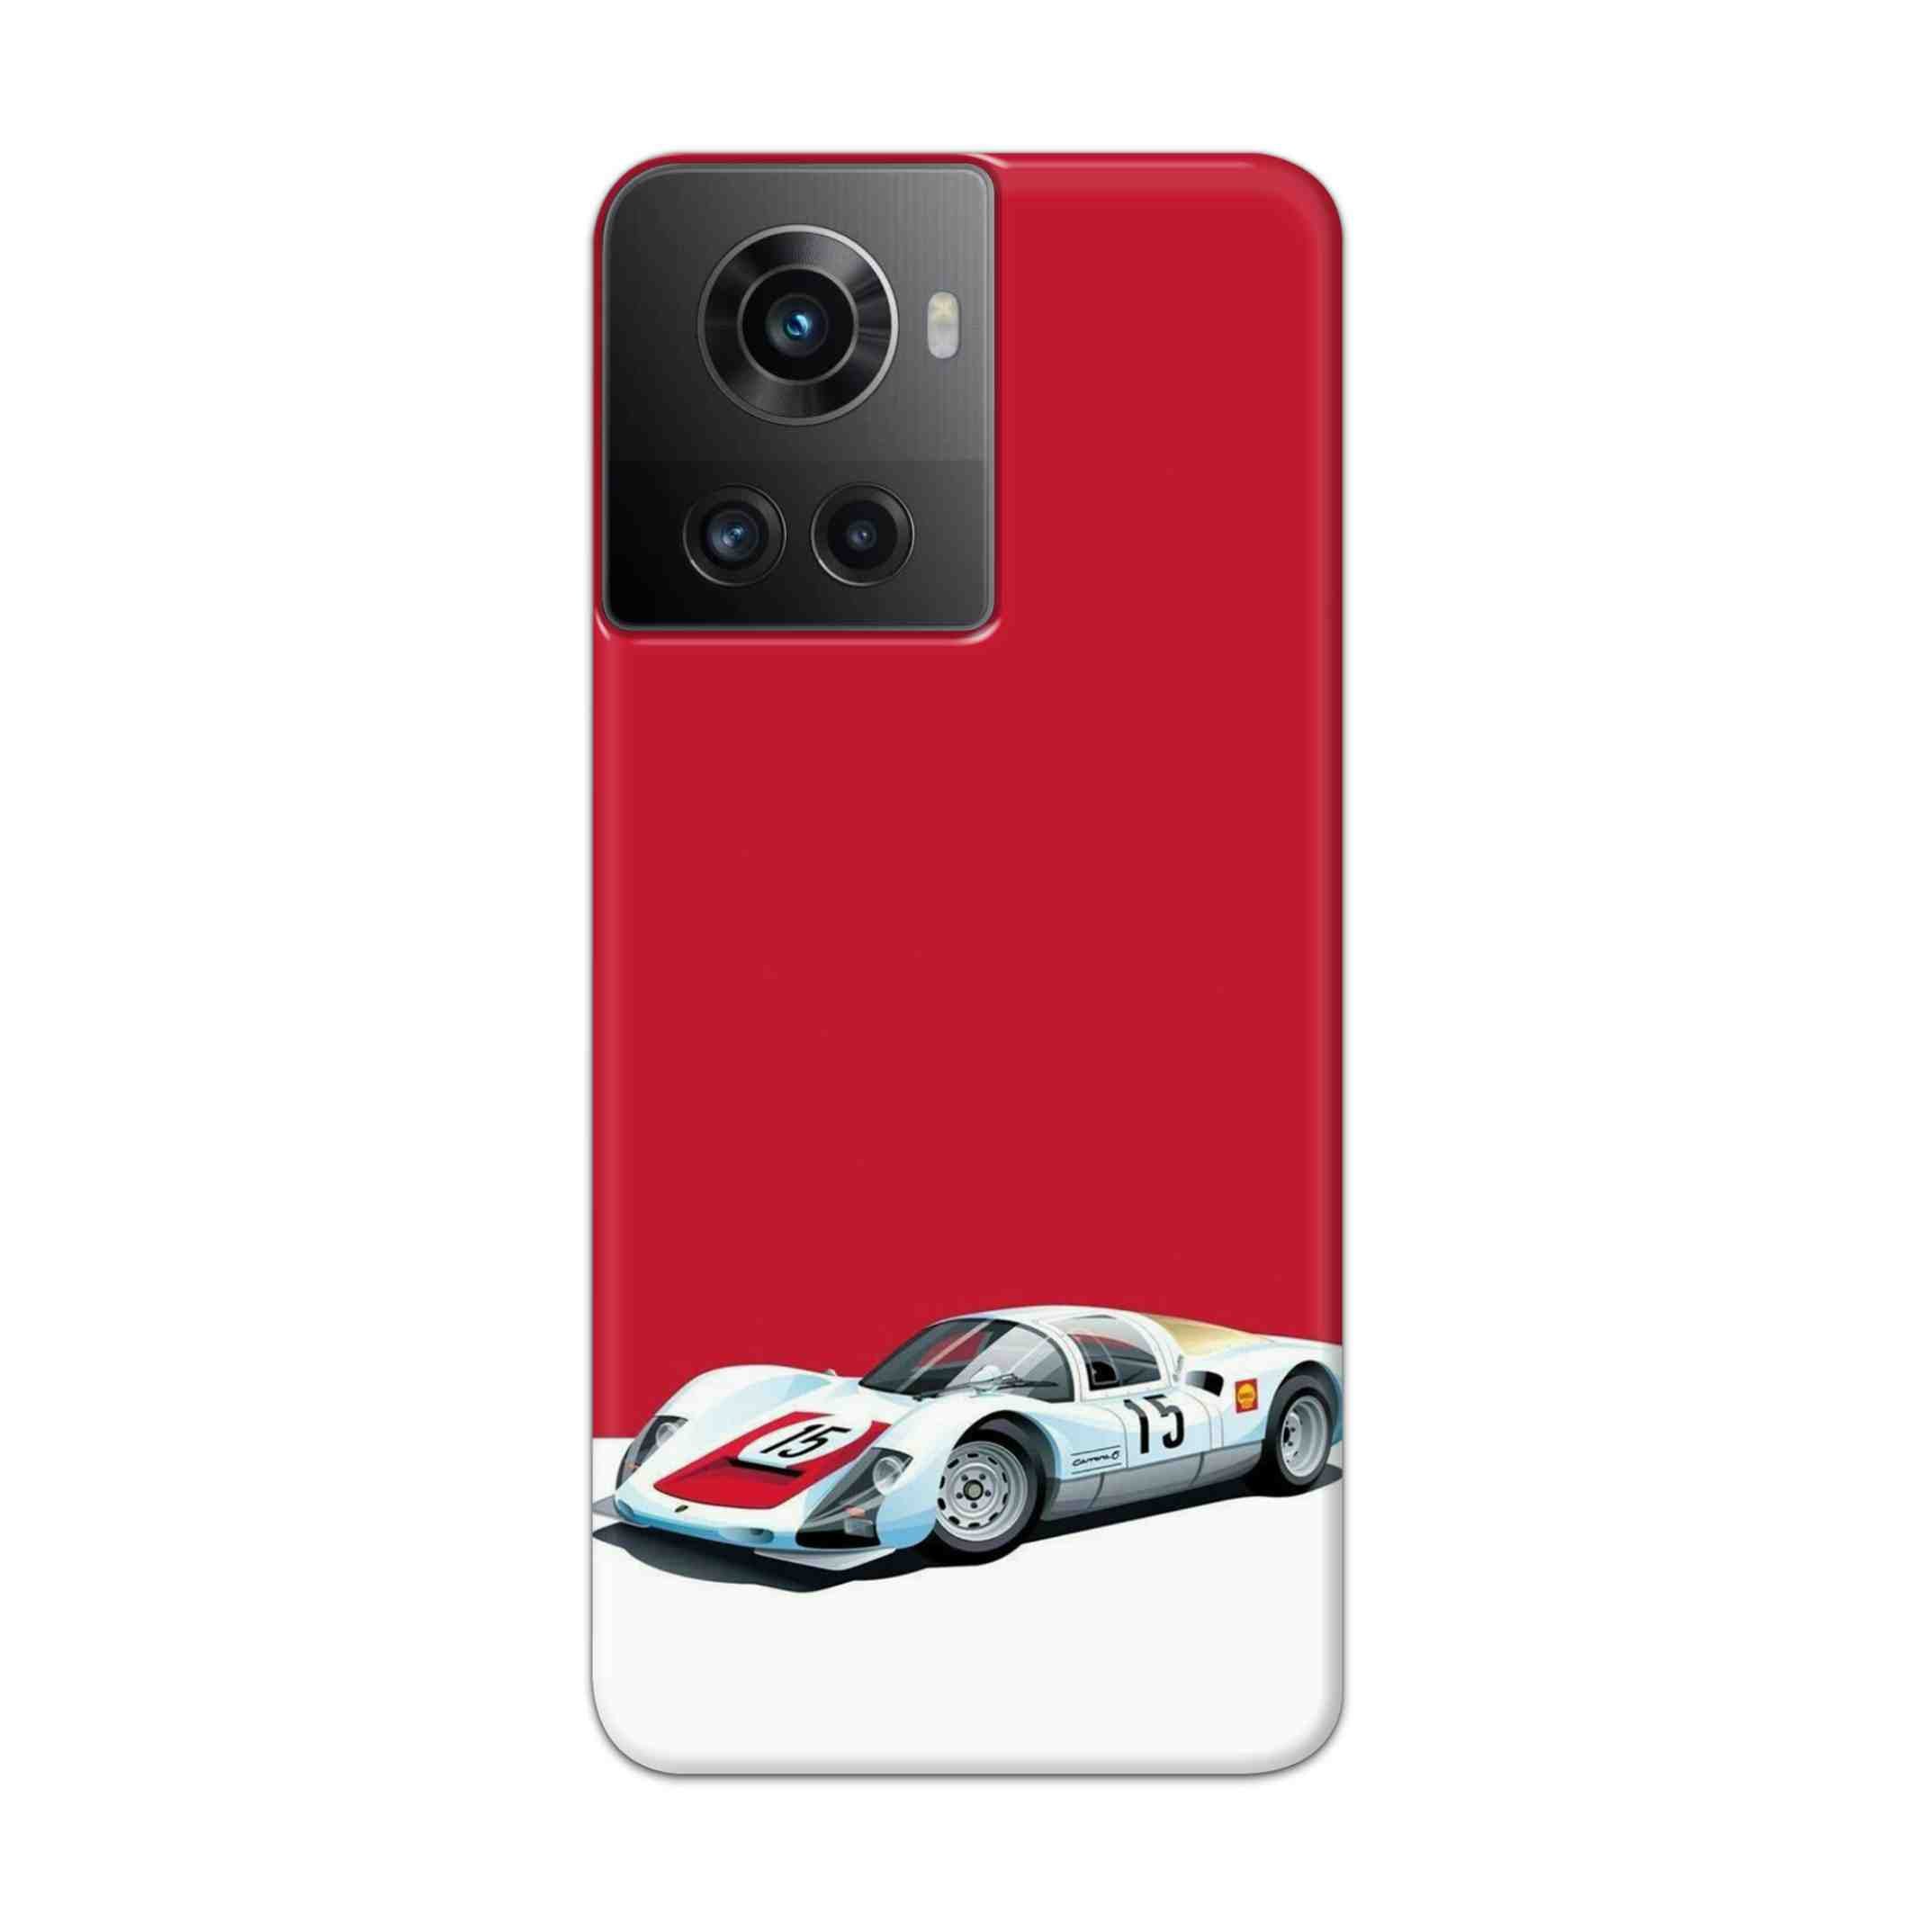 Buy Ferrari F15 Hard Back Mobile Phone Case Cover For Oneplus 10R Online